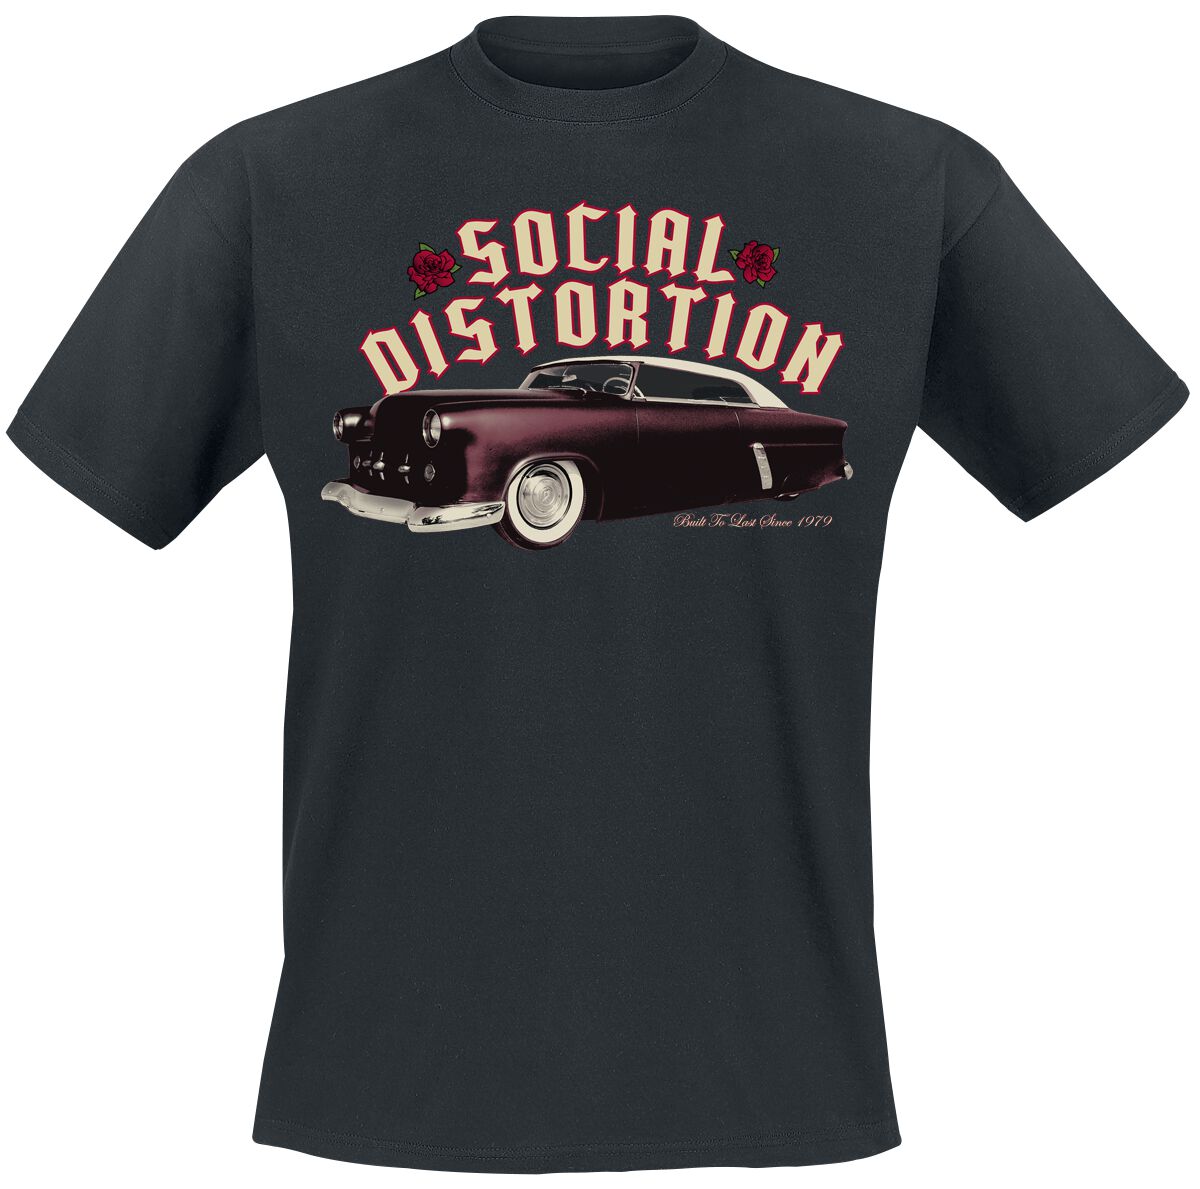 Social Distortion T-Shirt - Built To Last - S - für Männer - Größe S - schwarz  - Lizenziertes Merchandise!